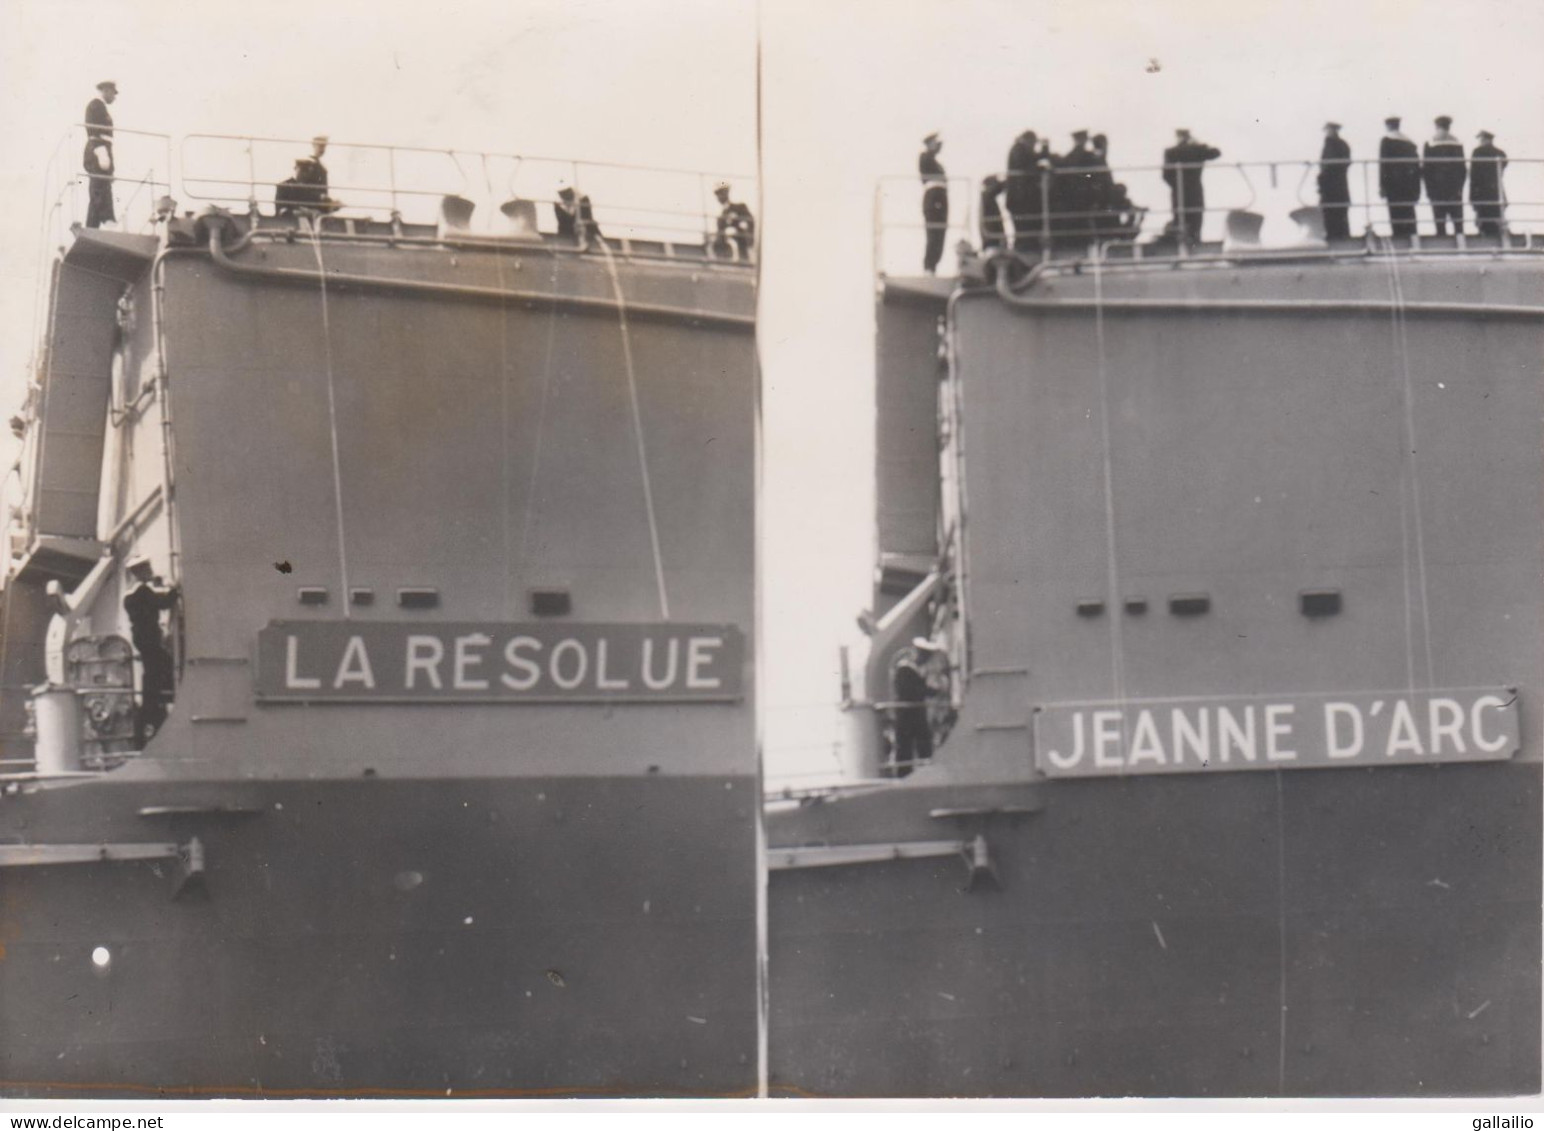 PHOTO PRESSE LE PORTE HELICOPTERES LA RESOLUE DEVIENT JEANNE D'ARC A F P PHOTO JUILLET 1964 FORMAT 18 X 13 CMS - Schiffe